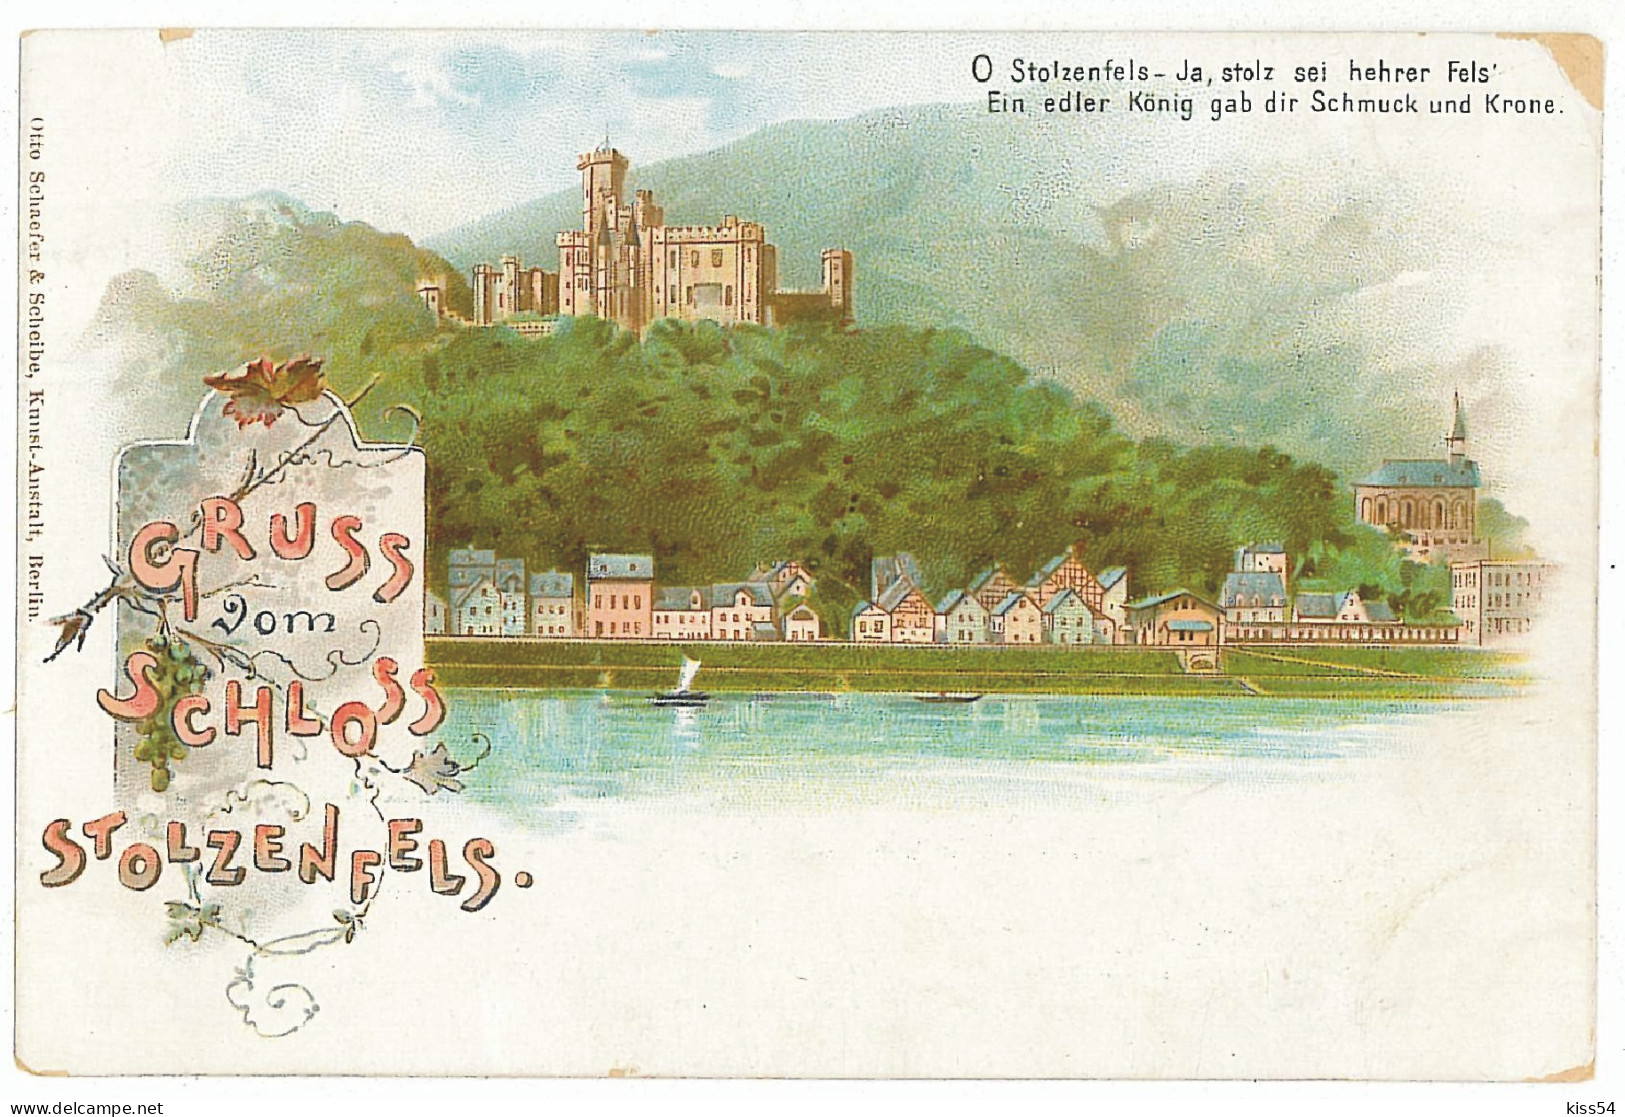 GER 07 - 5700 RHEIN, STOLZENFELS, Germany, Litho, Castle - Old Postcard - Unused - Koblenz